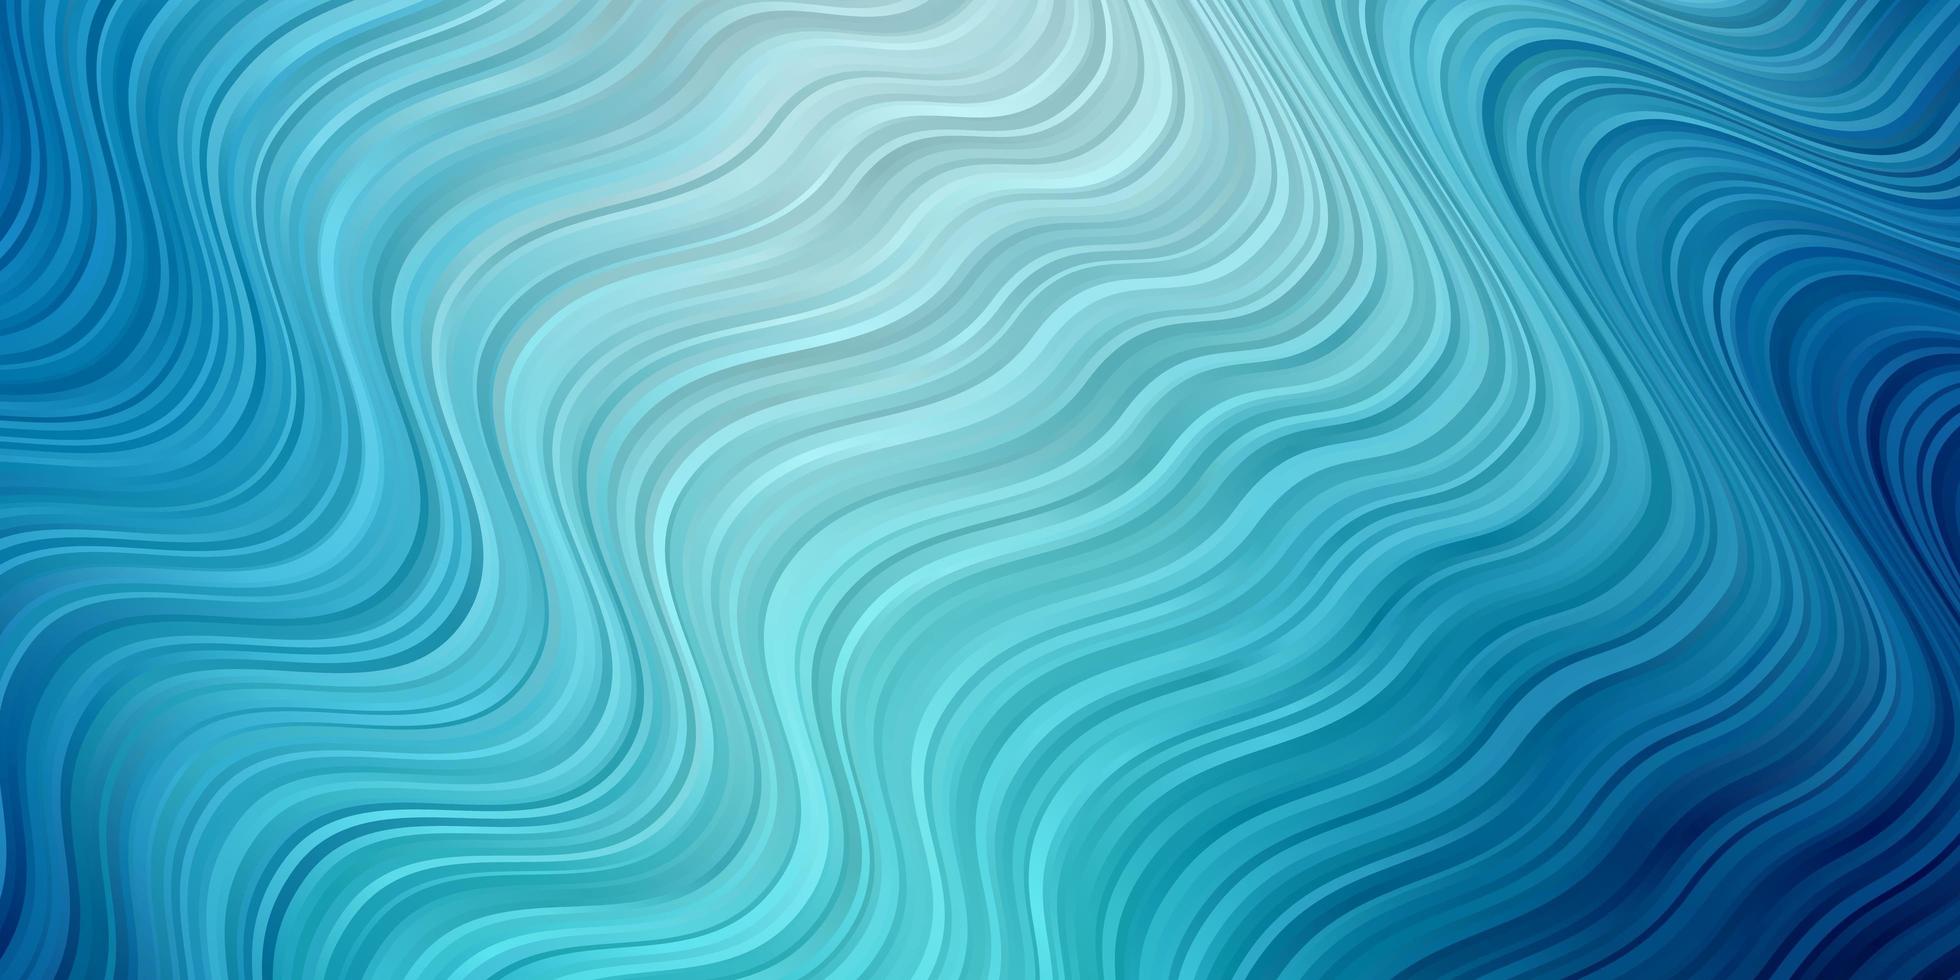 ljusblå vektor bakgrund med kurvor. abstrakt illustration med bandy lutningslinjer. design för din företagsreklam.